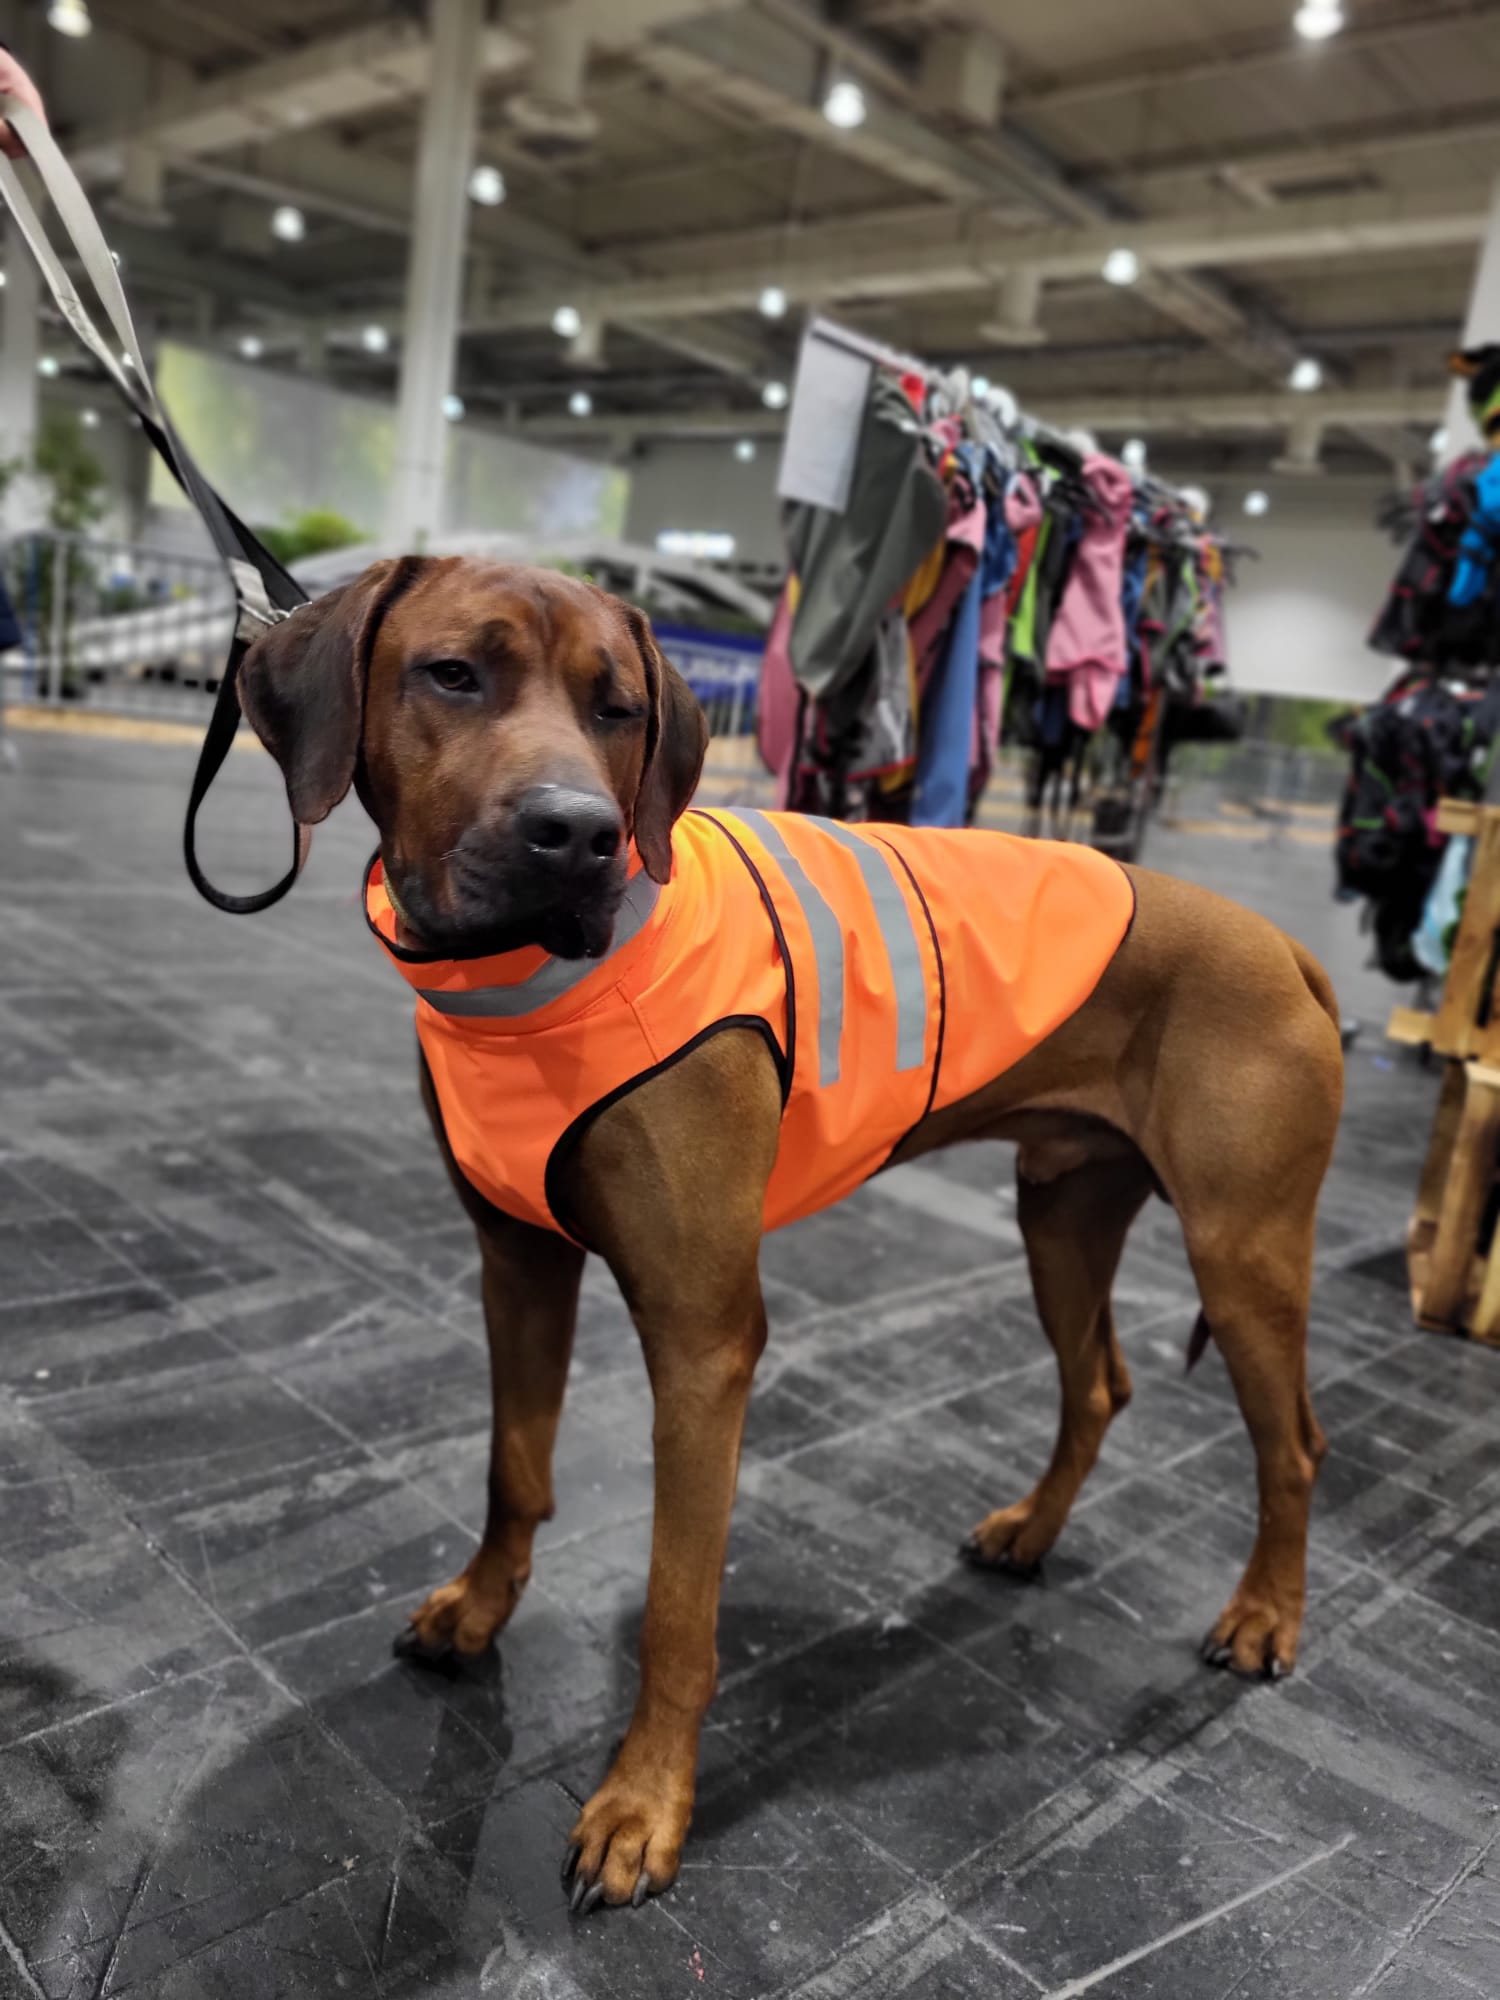 DONGKER Warnweste Hund, Verstellbar Neongelb Sicherheitsweste Hunde mit  Reflektierenden Elementen für mehr Sicherheit im Dunkeln : :  Haustier